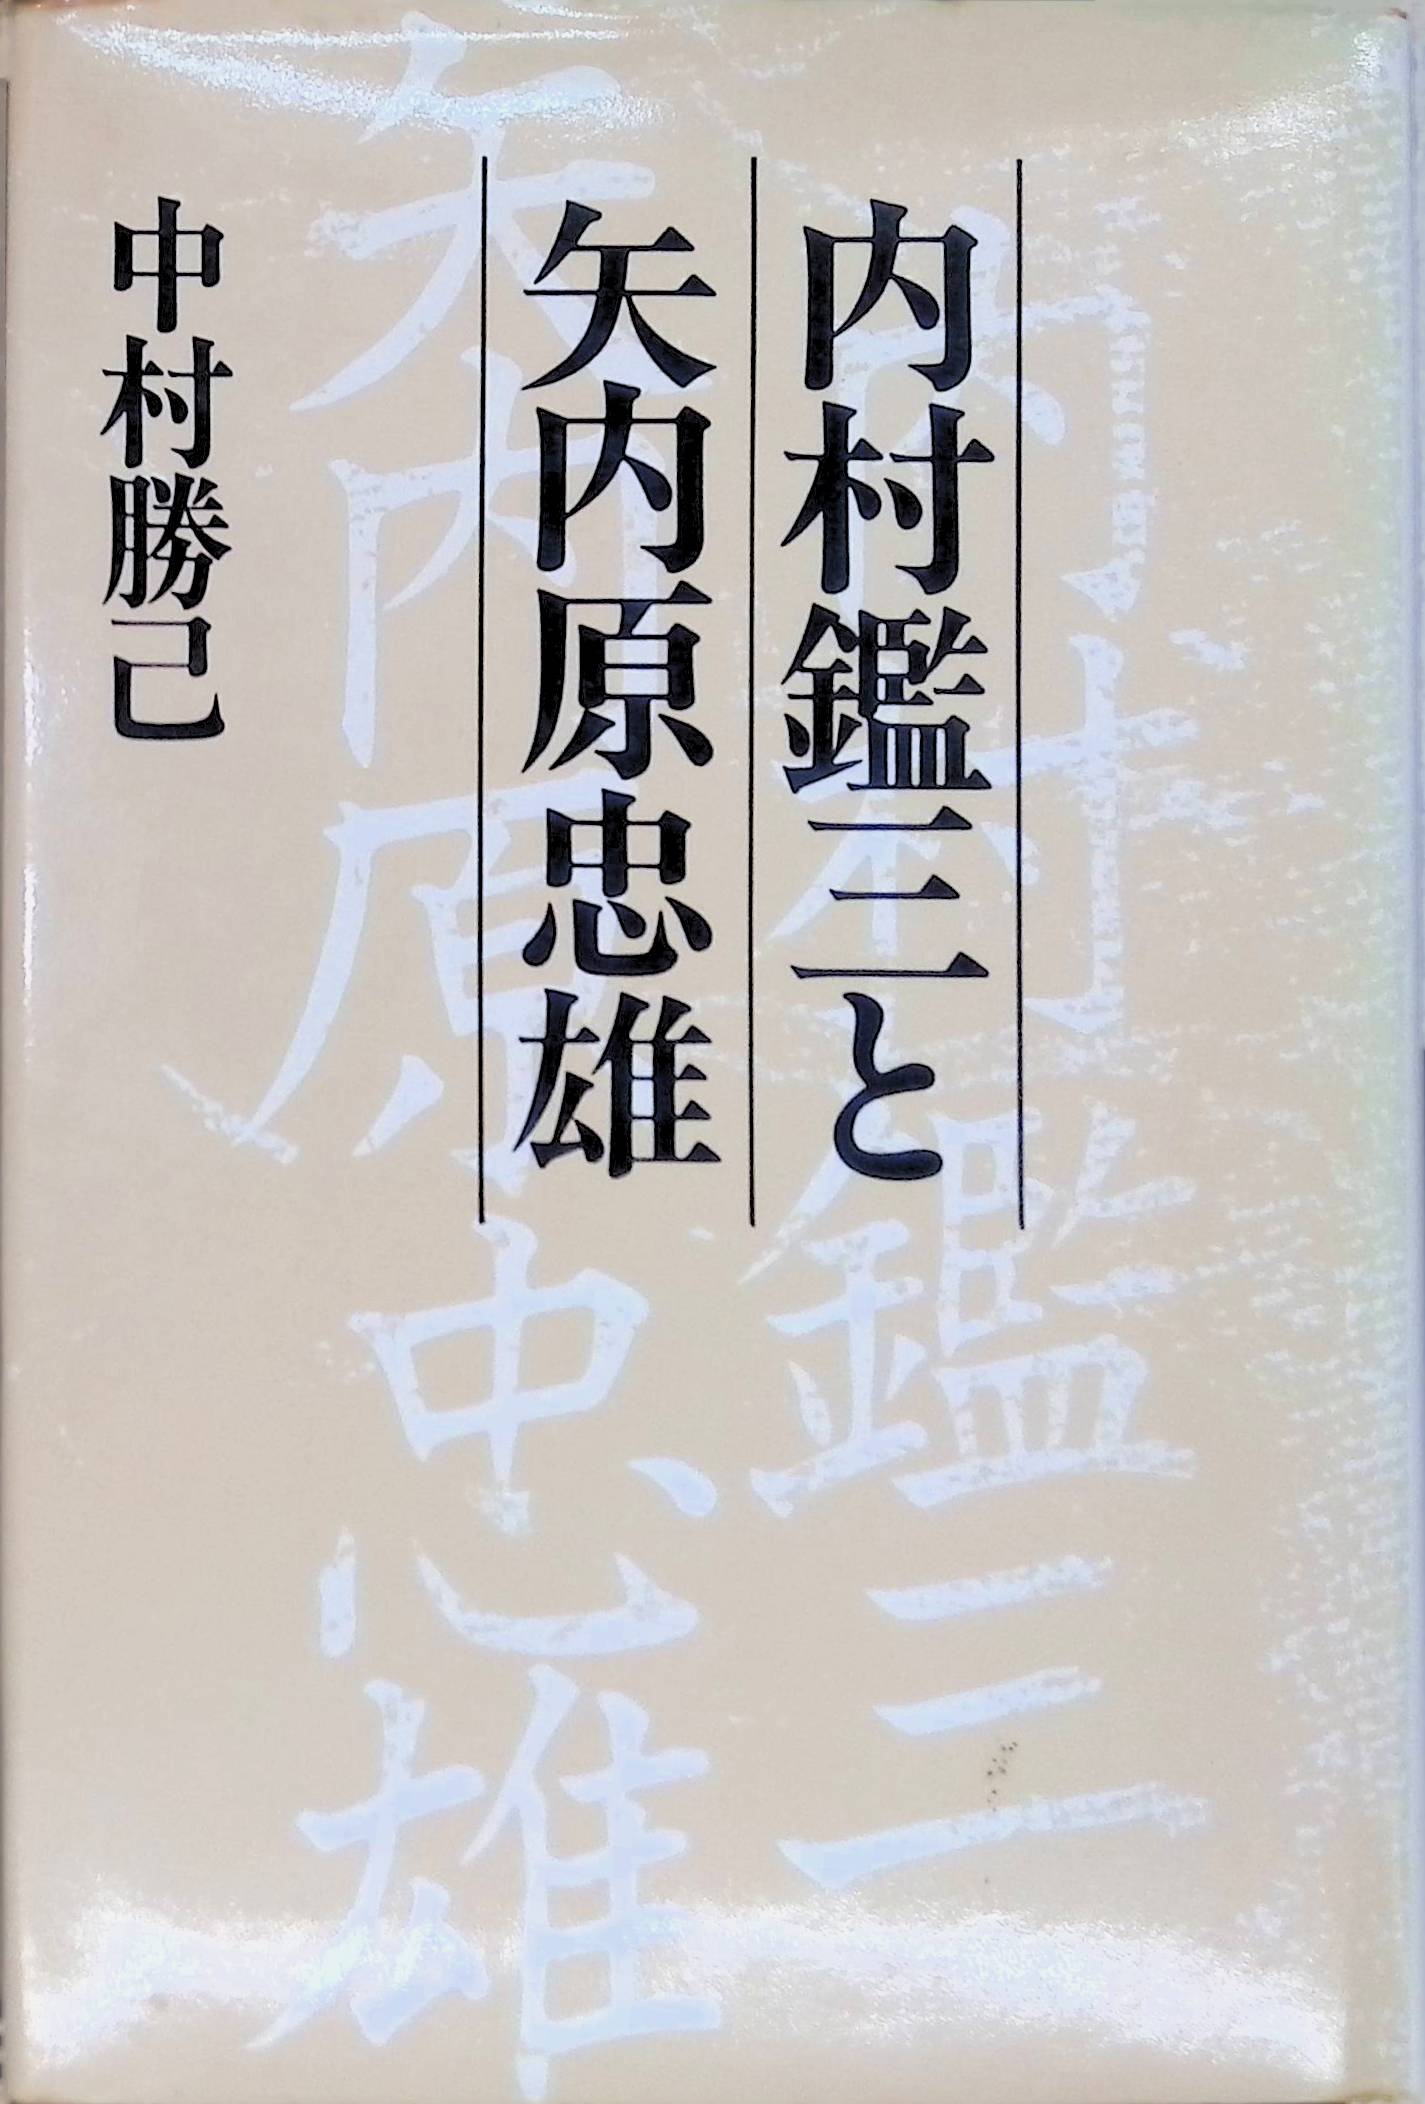 内村鑑三と矢内原忠雄 [中村 勝己](リブロポート)(ISBN:)